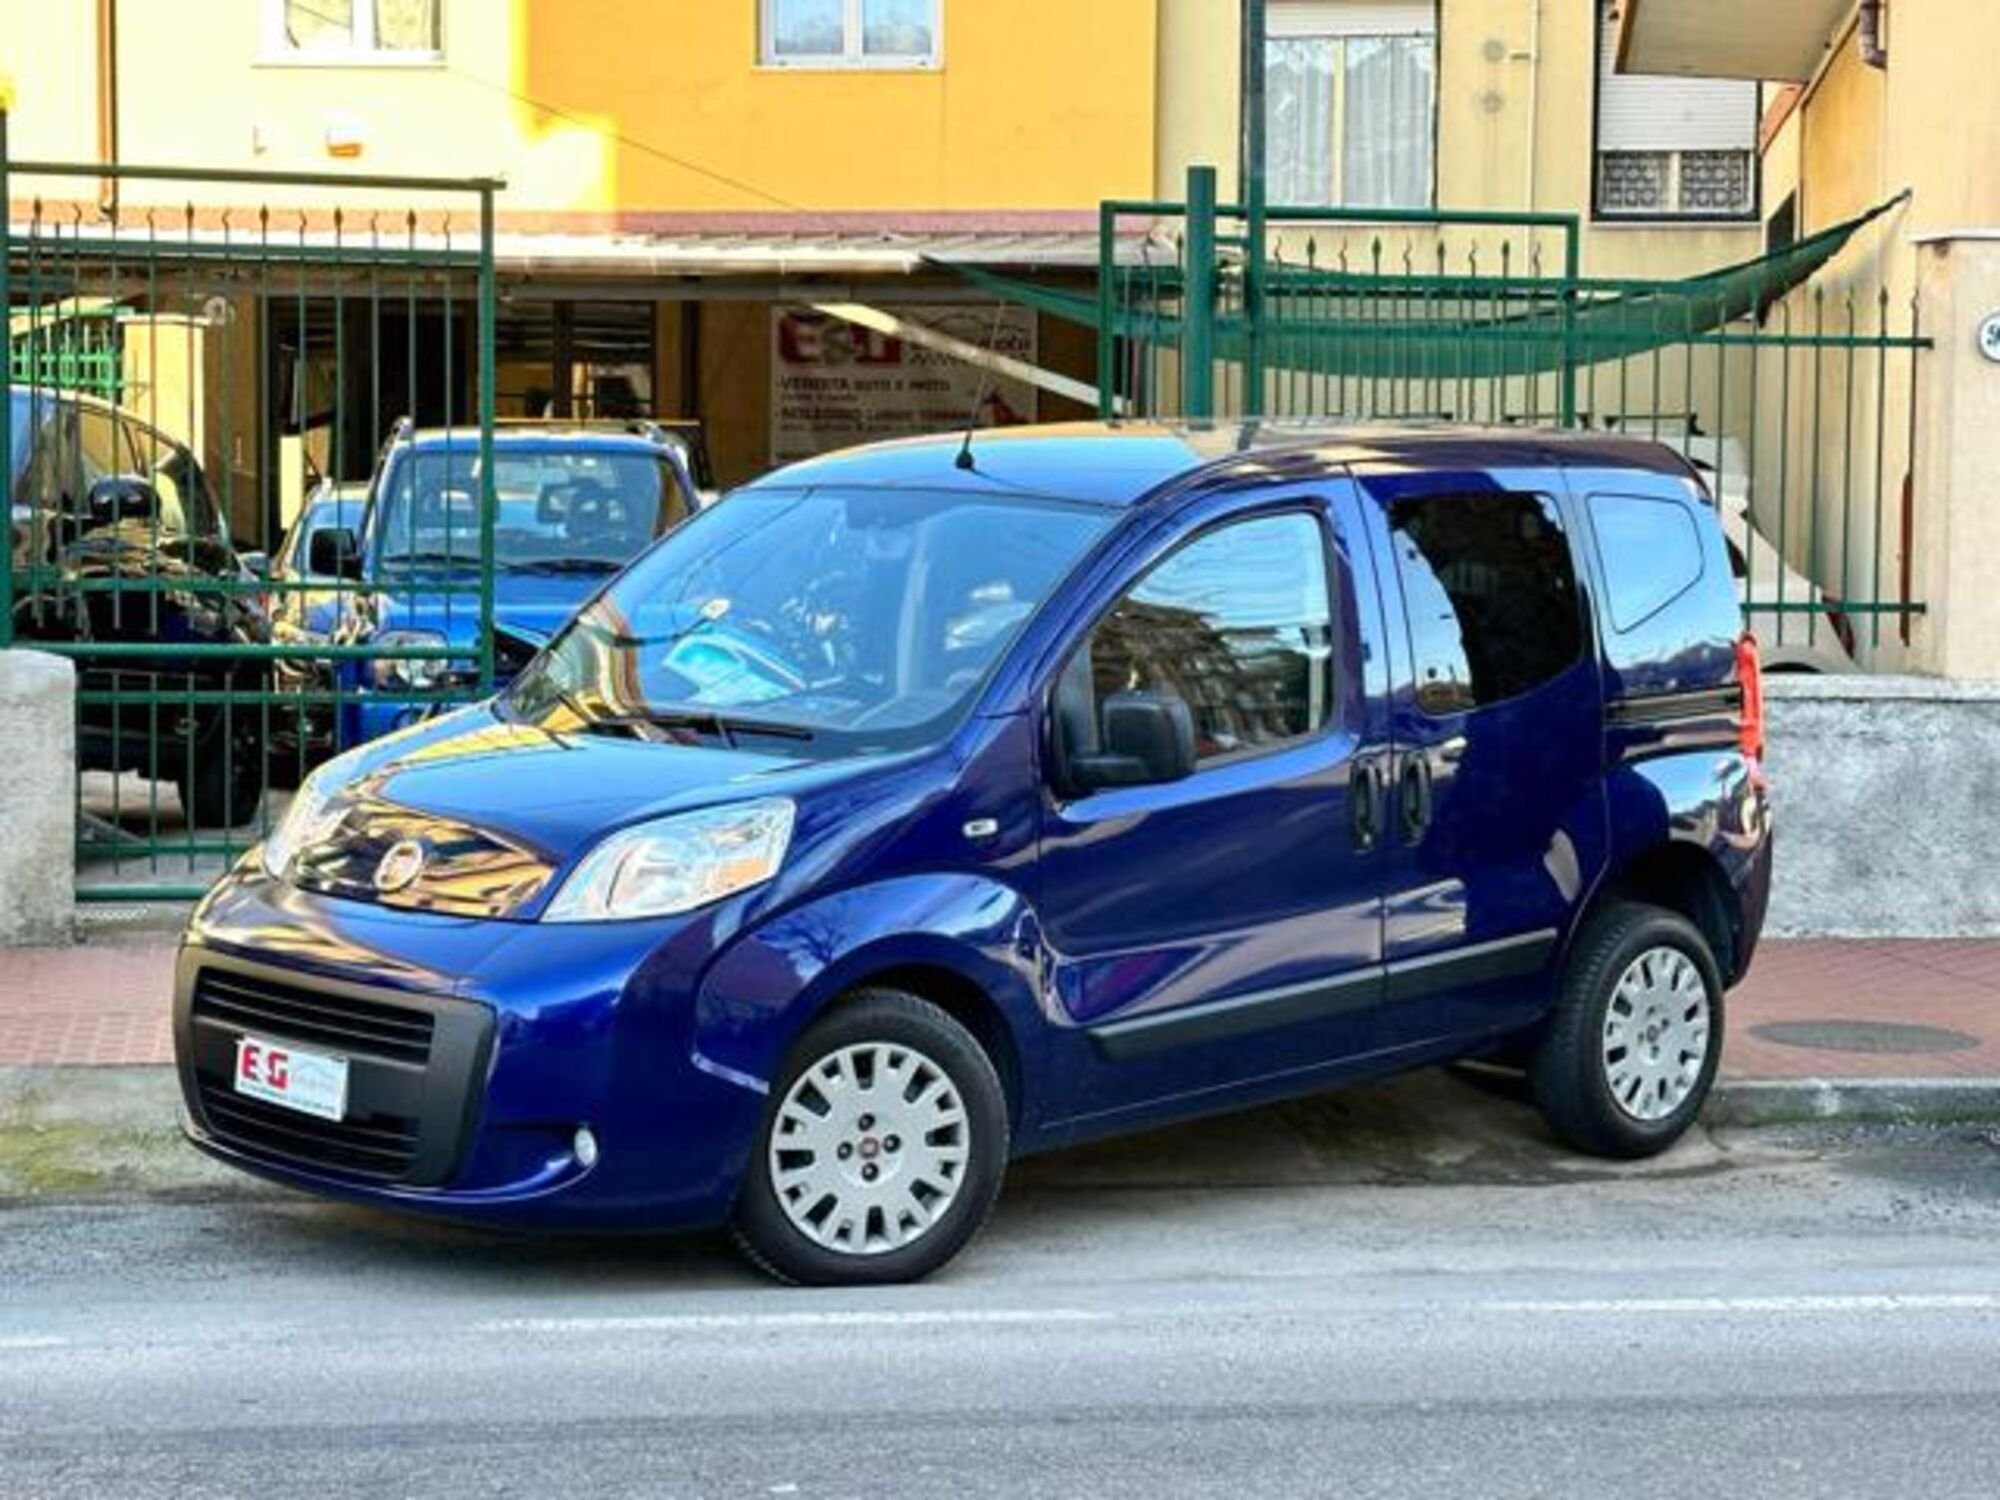 Fiat QUBO 1.3 MJT 75 CV Dynamic usato